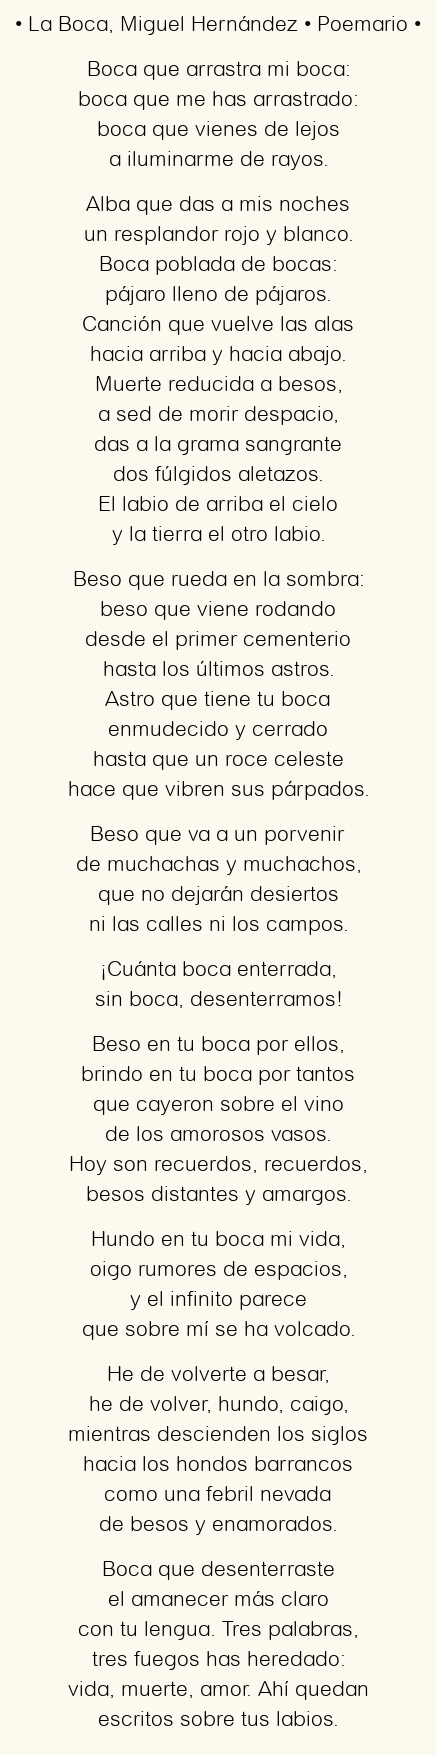 Imagen con el poema La Boca, por Miguel Hernández